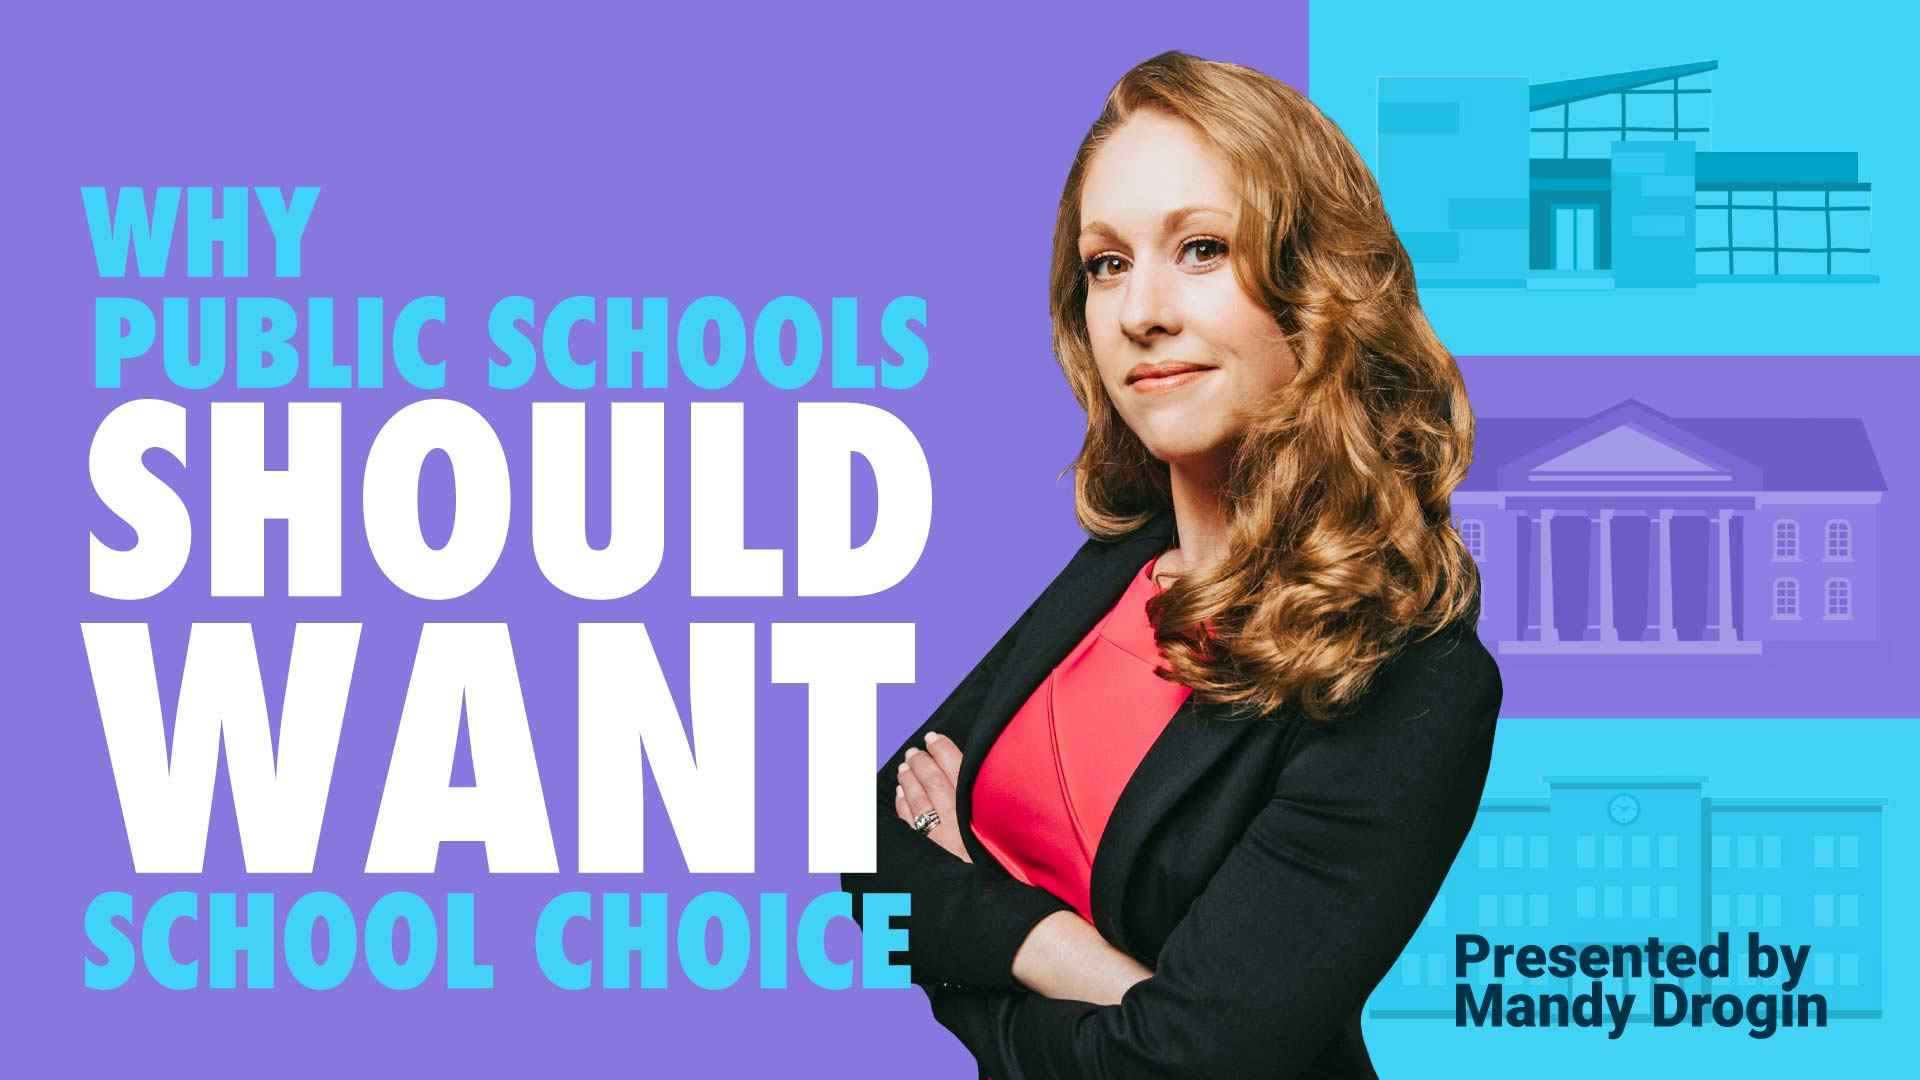 Why Public Schools Should Want School Choice